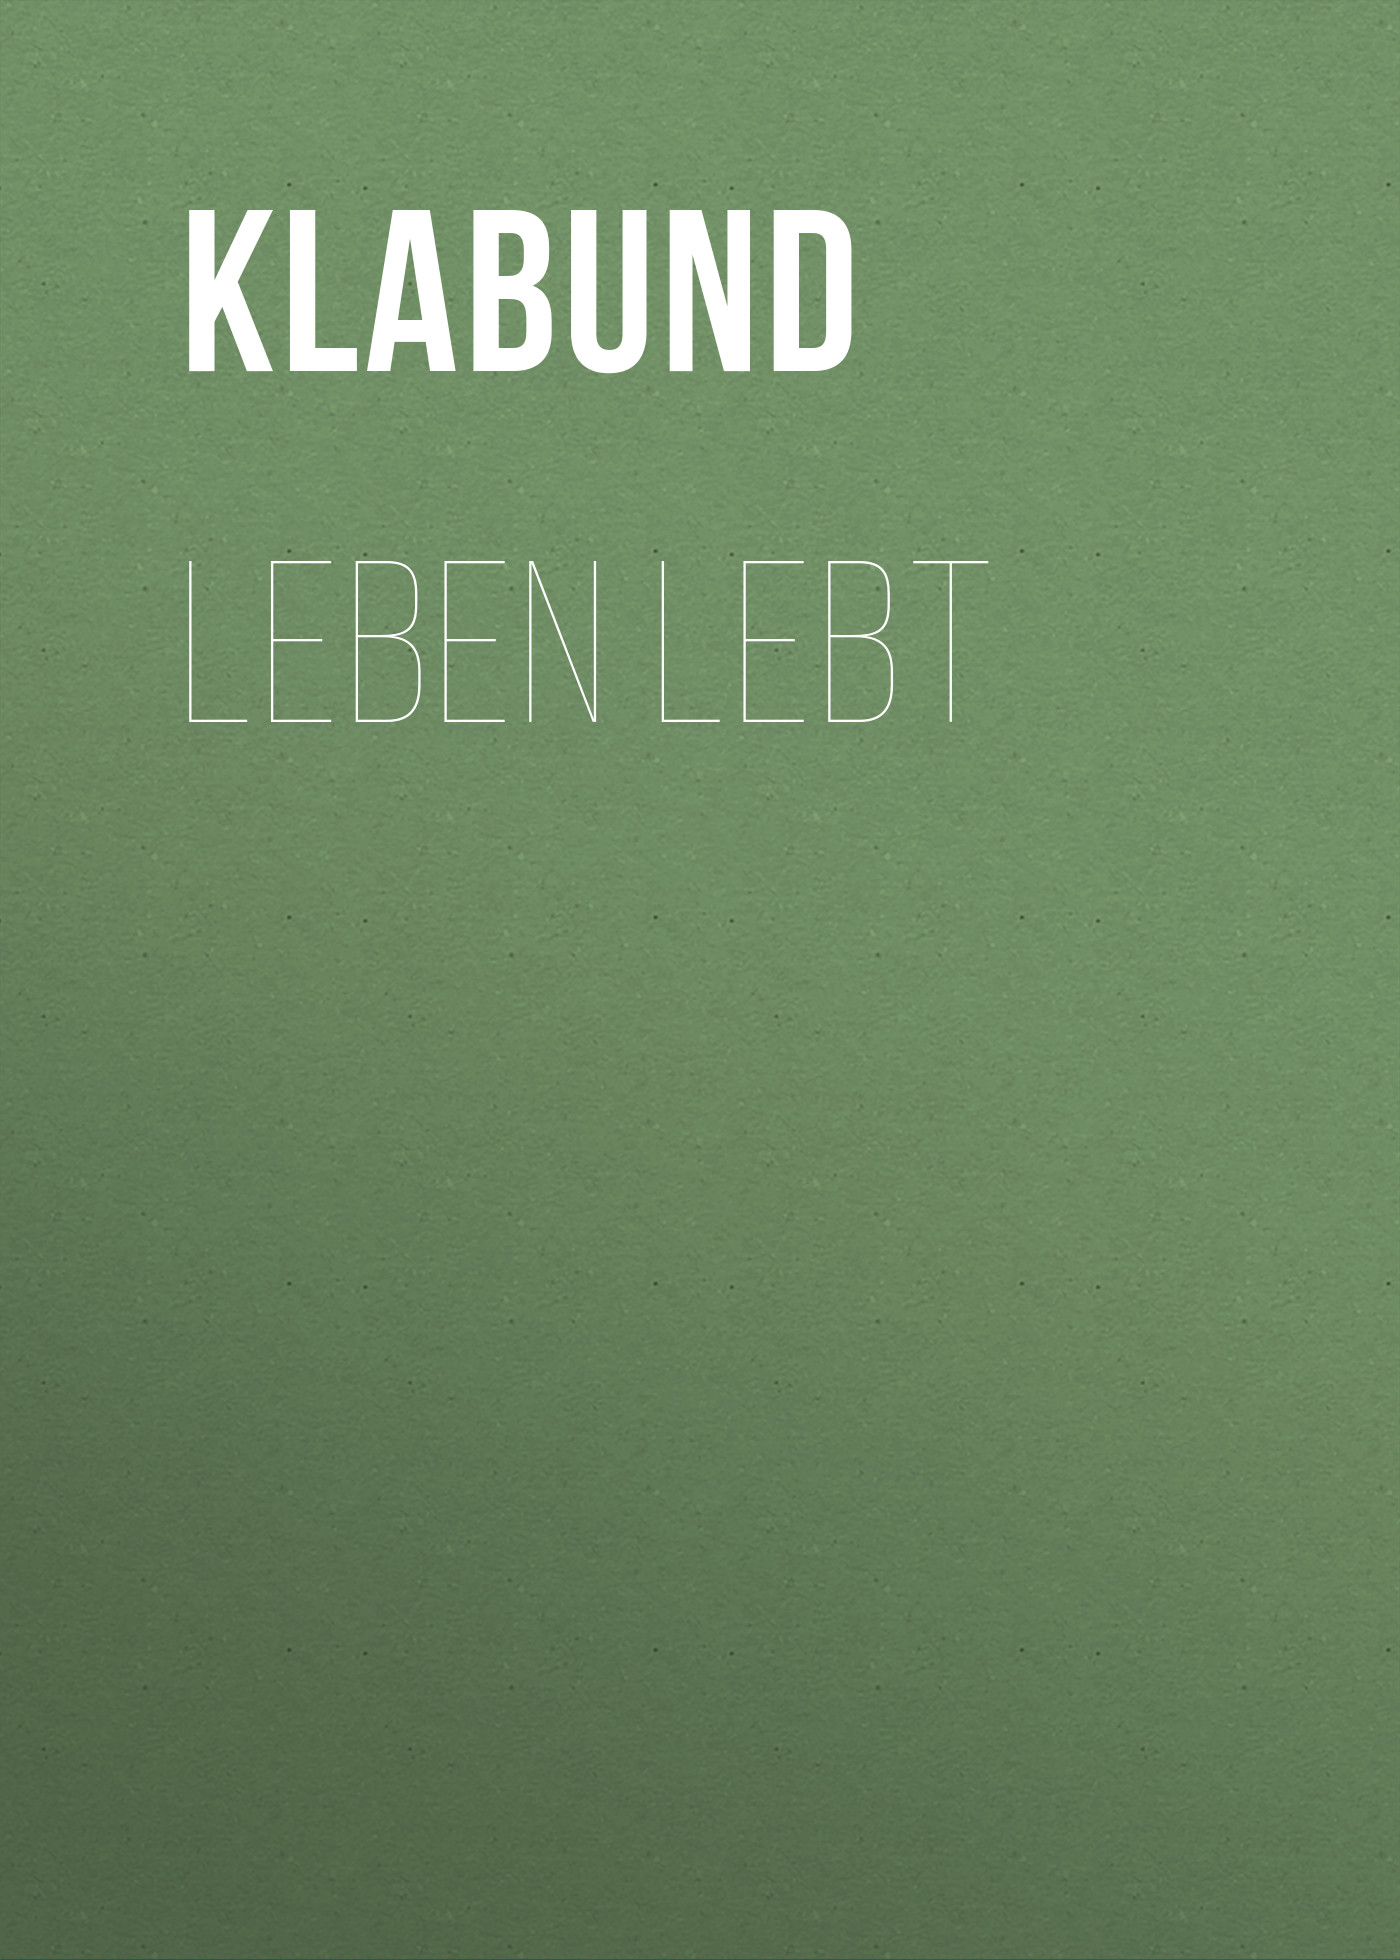 Книга Leben lebt из серии , созданная Klabund , может относится к жанру Зарубежная классика. Стоимость электронной книги Leben lebt с идентификатором 48633988 составляет 0 руб.